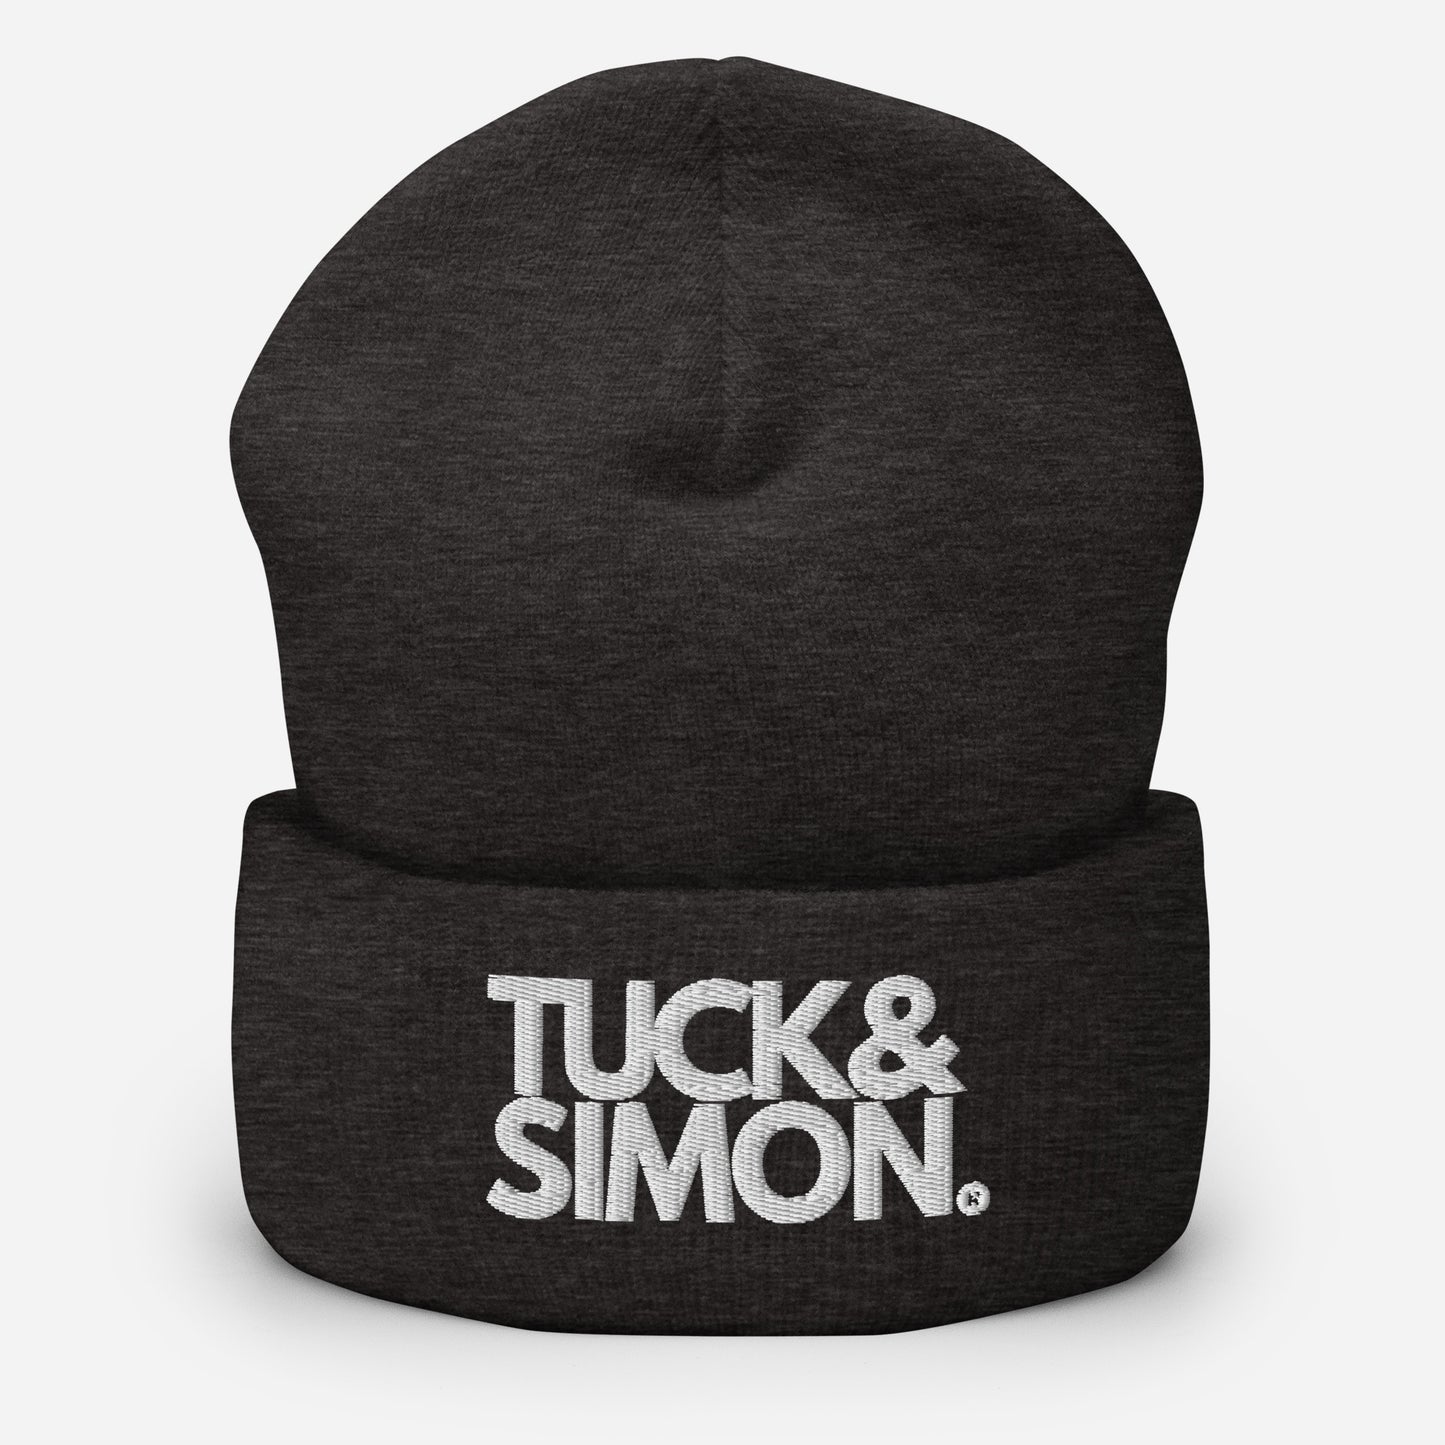 Tuck&Simon Cuffed Beanie